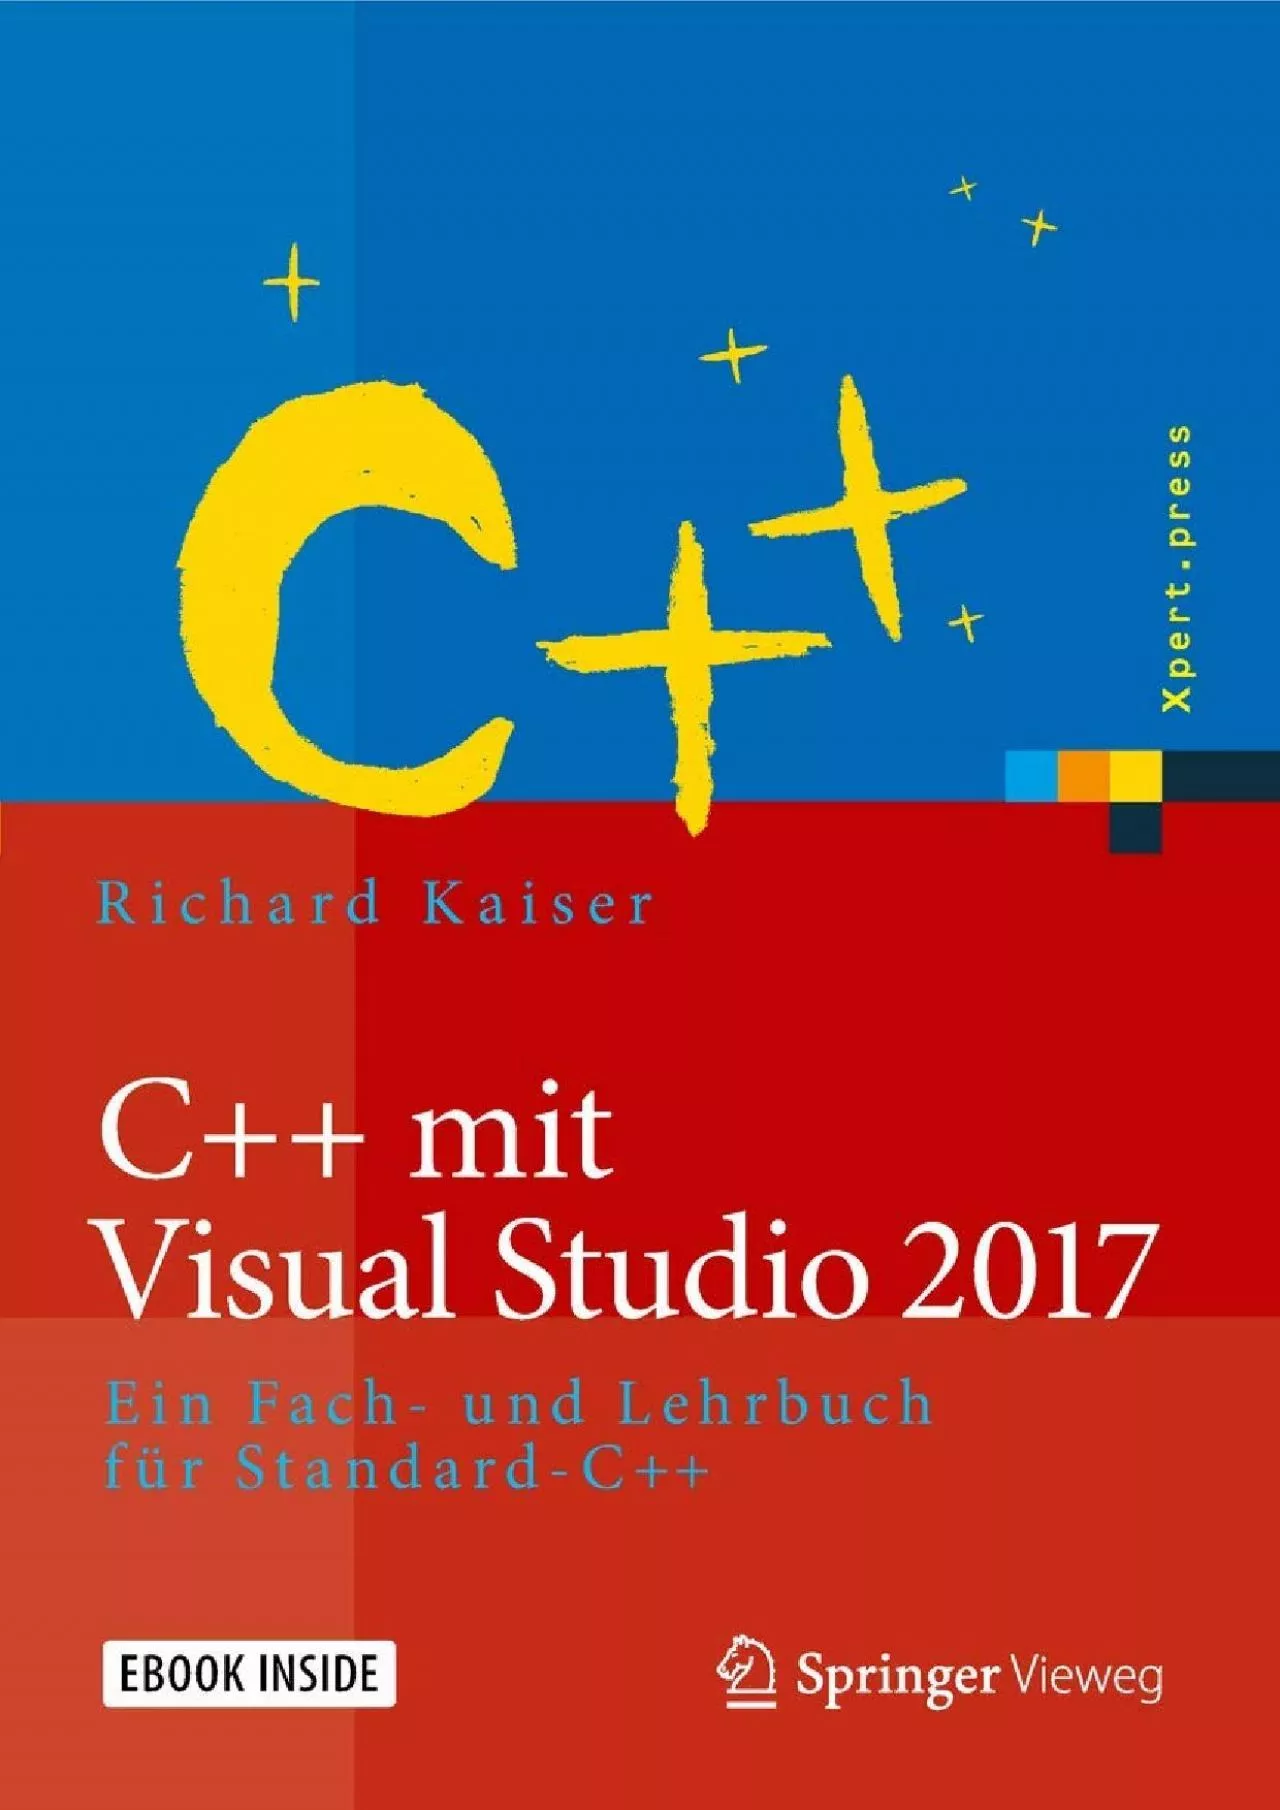 [READING BOOK]-C++ mit Visual Studio 2017: Ein Fach- und Lehrbuch für Standard-C++ (Xpert.press)